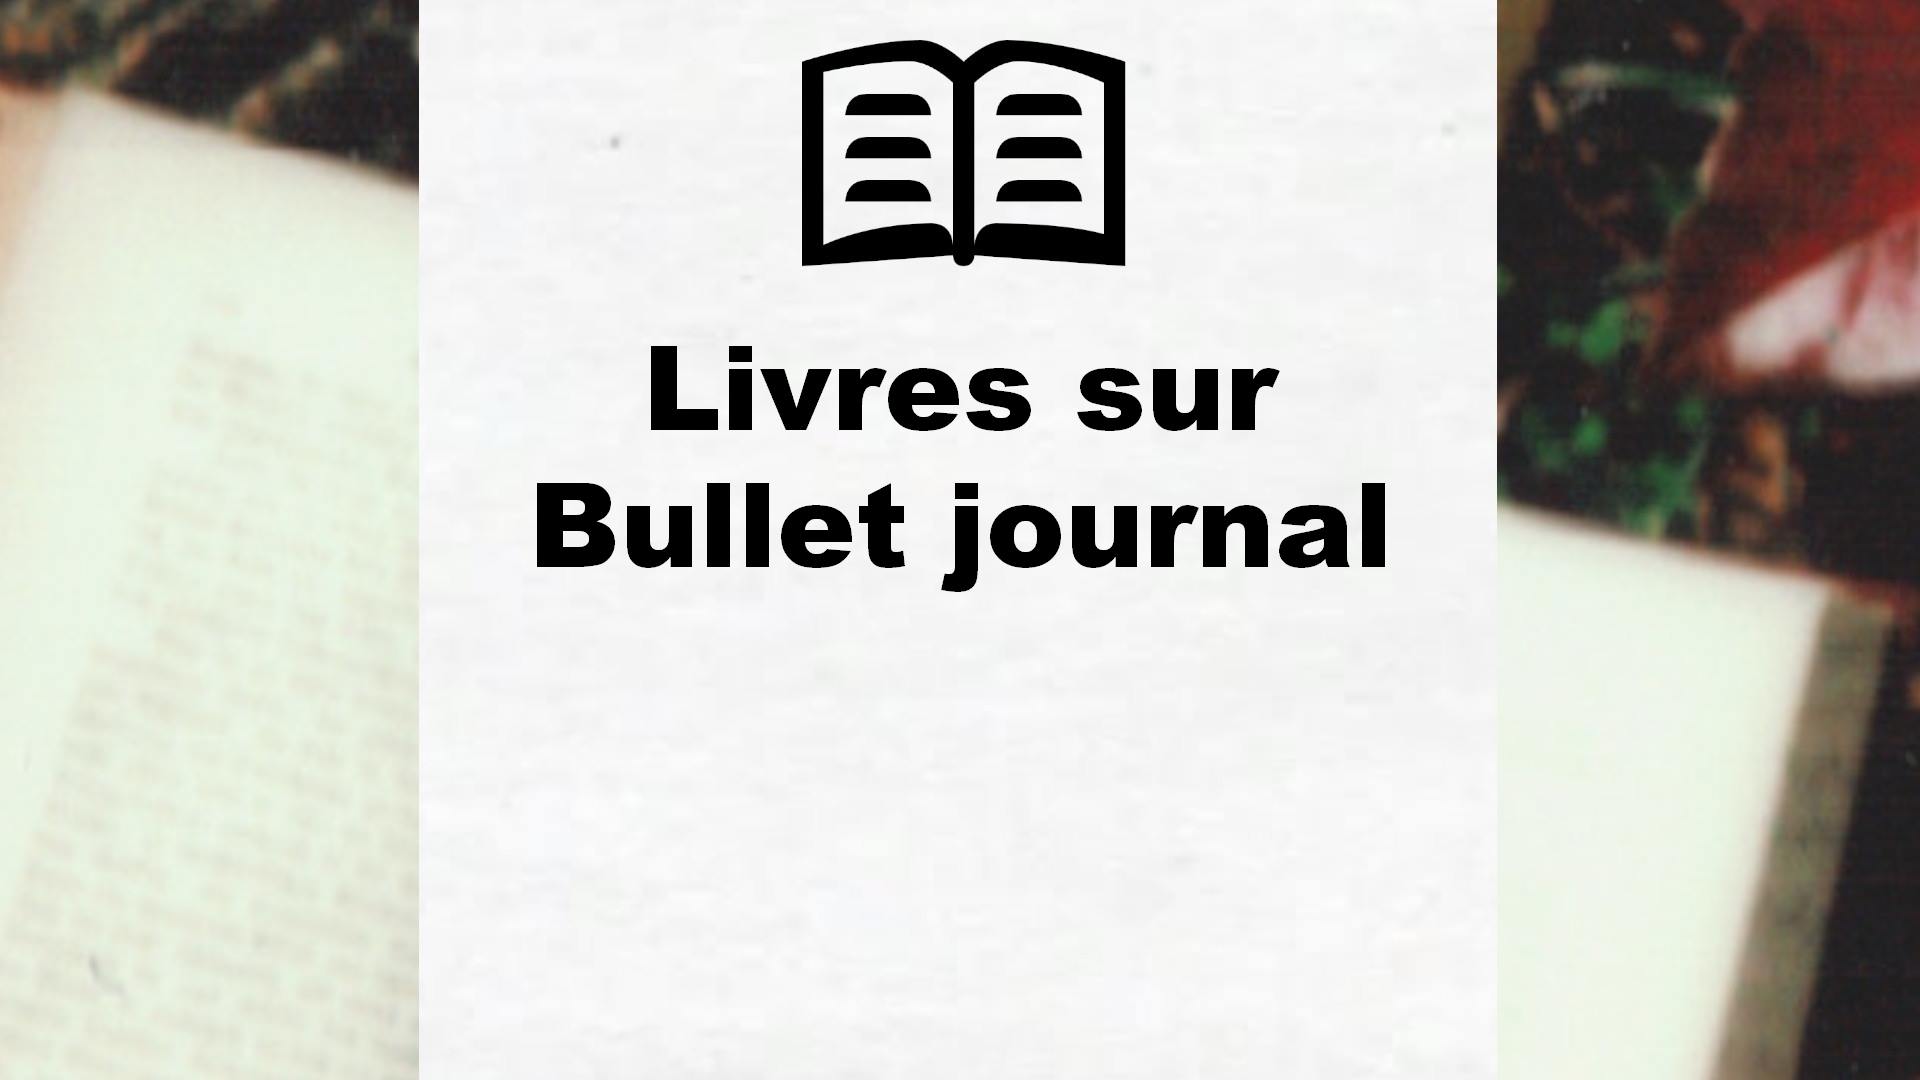 Livres sur Bullet journal